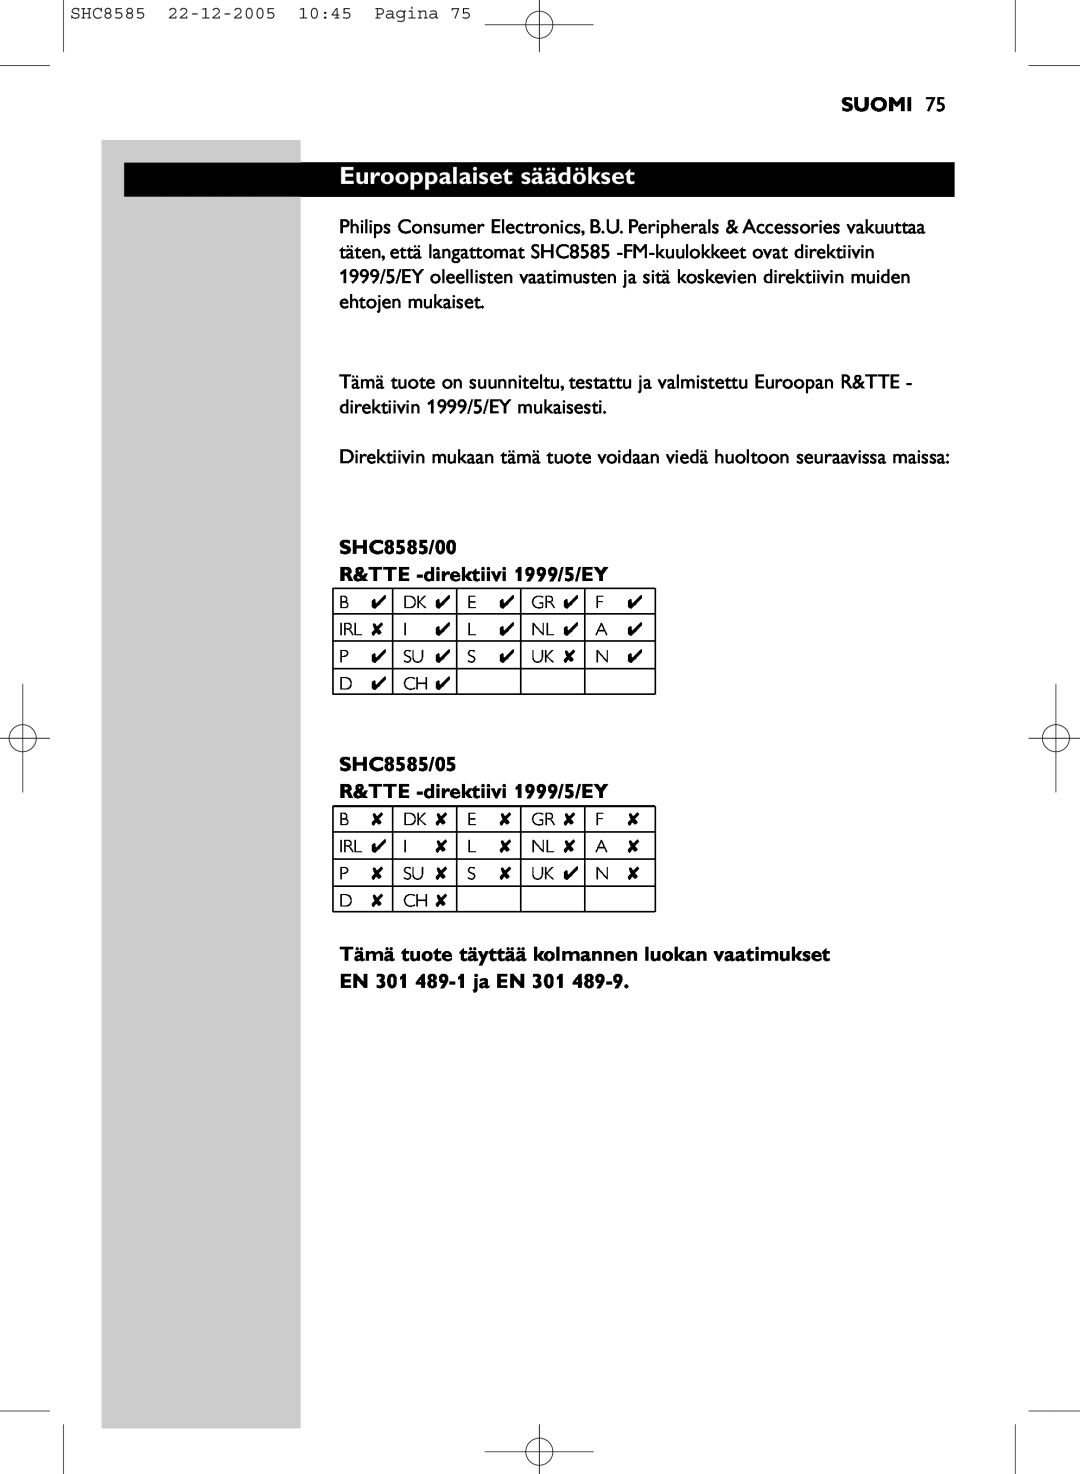 Philips Eurooppalaiset säädökset, Suomi, SHC8585/00 R&TTE -direktiivi1999/5/EY, SHC8585/05 R&TTE -direktiivi1999/5/EY 